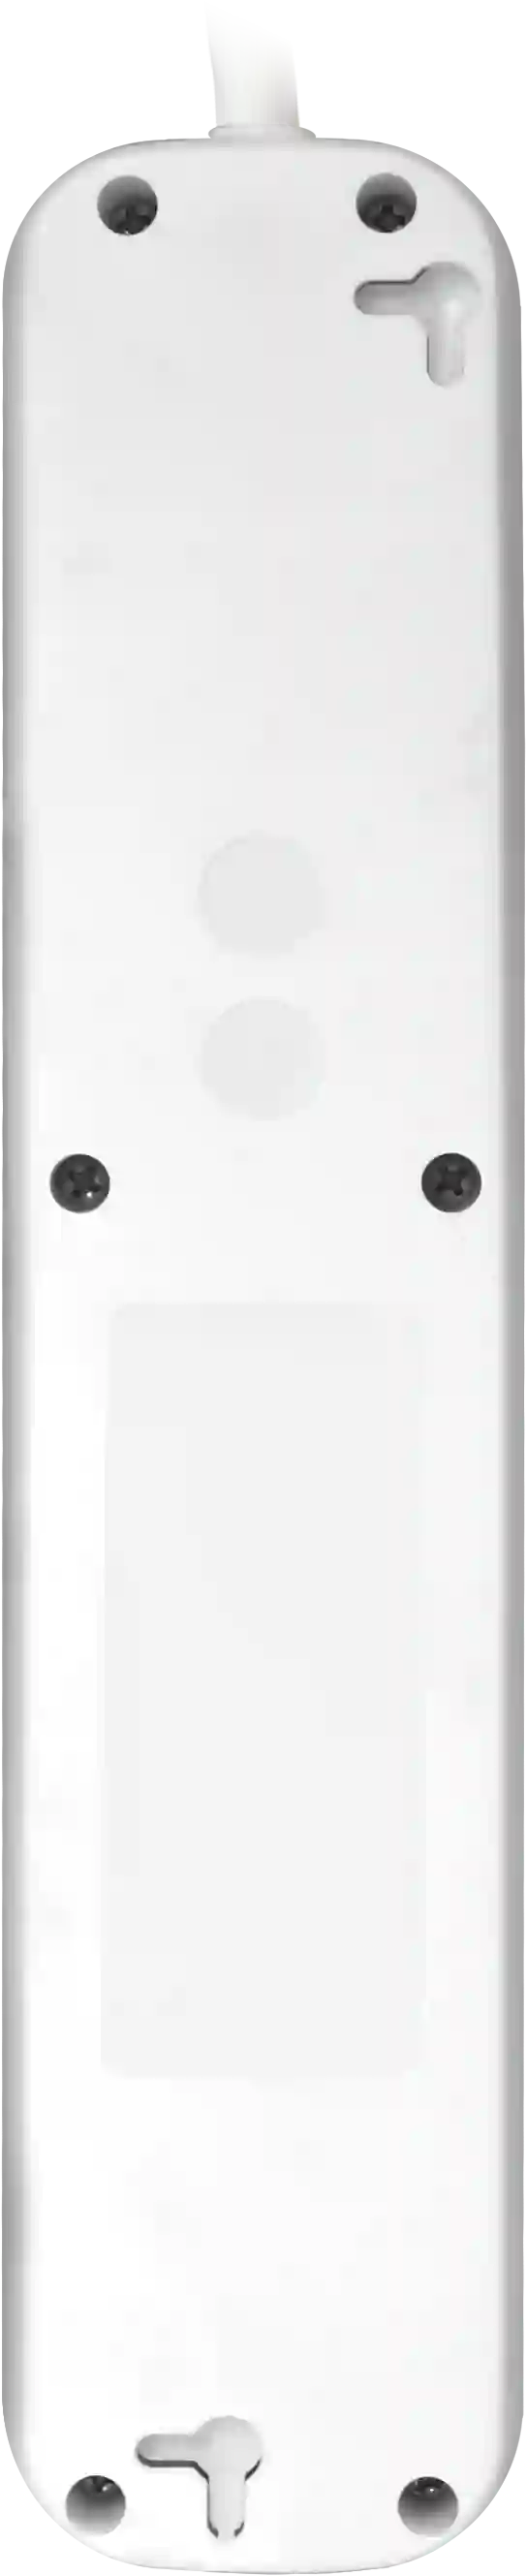 Удлинитель с заземлением DEFENDER E518 1,8м White (99229)